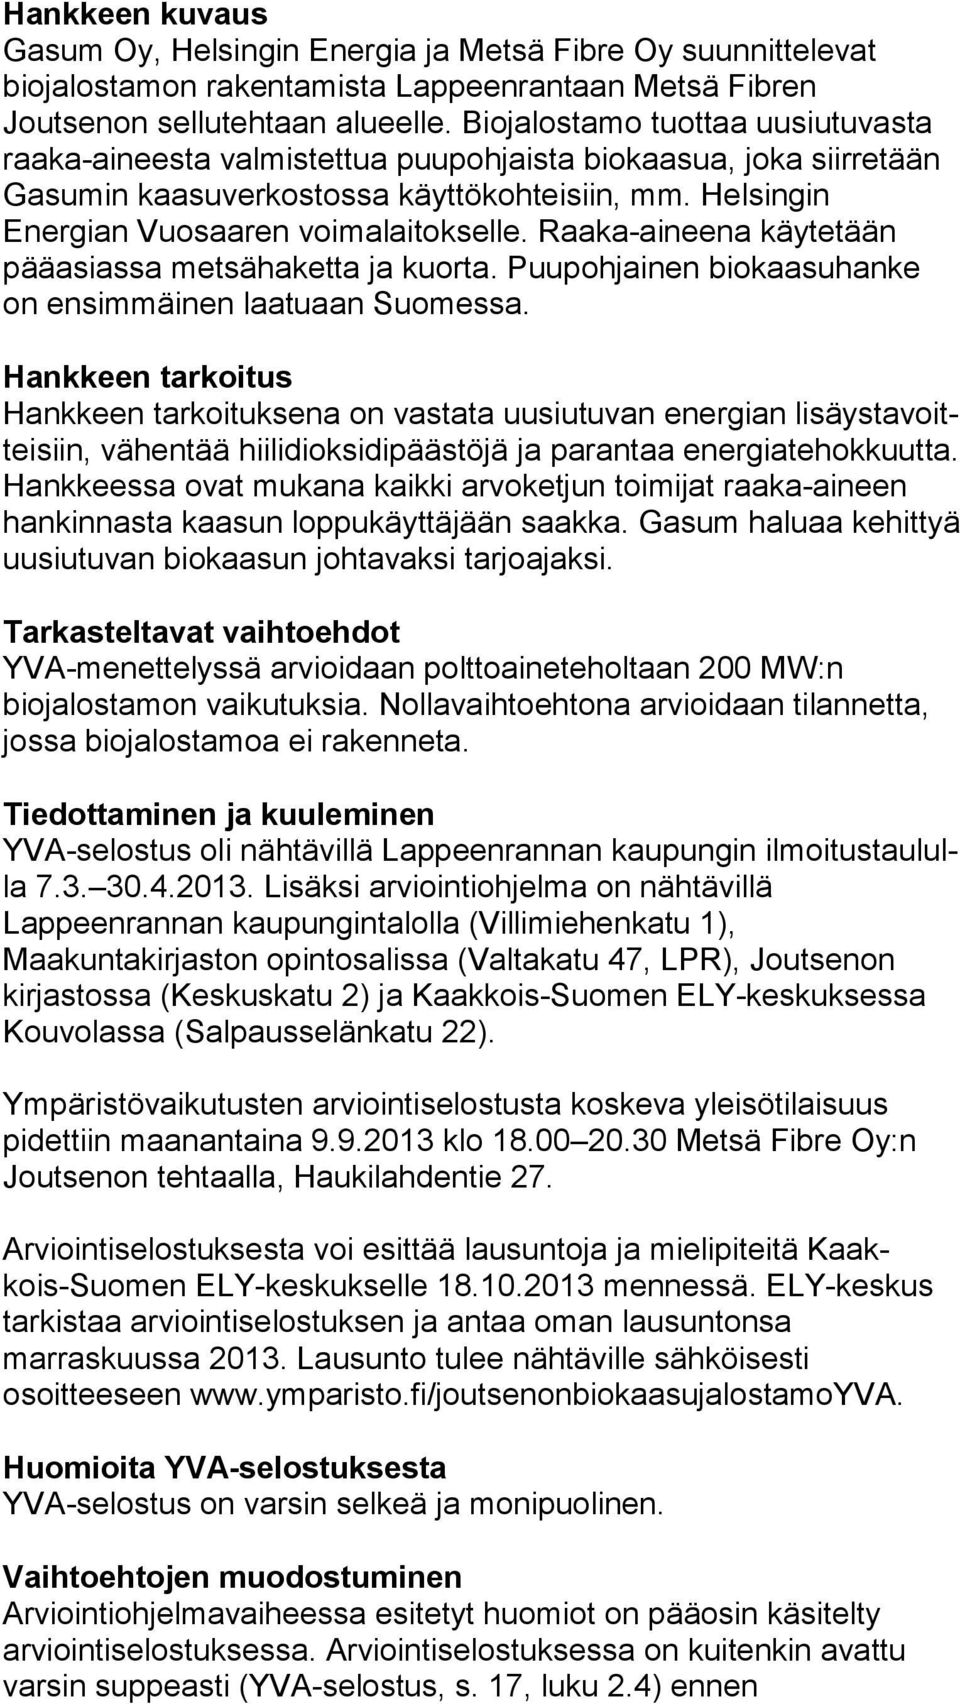 Helsingin Energian Vuosaaren voi ma lai tok sel le. Raaka-aineena käytetään pääasiassa met sä ha ket ta ja kuorta. Puupohjainen biokaasuhanke on ensimmäinen laa tu aan Suomessa.